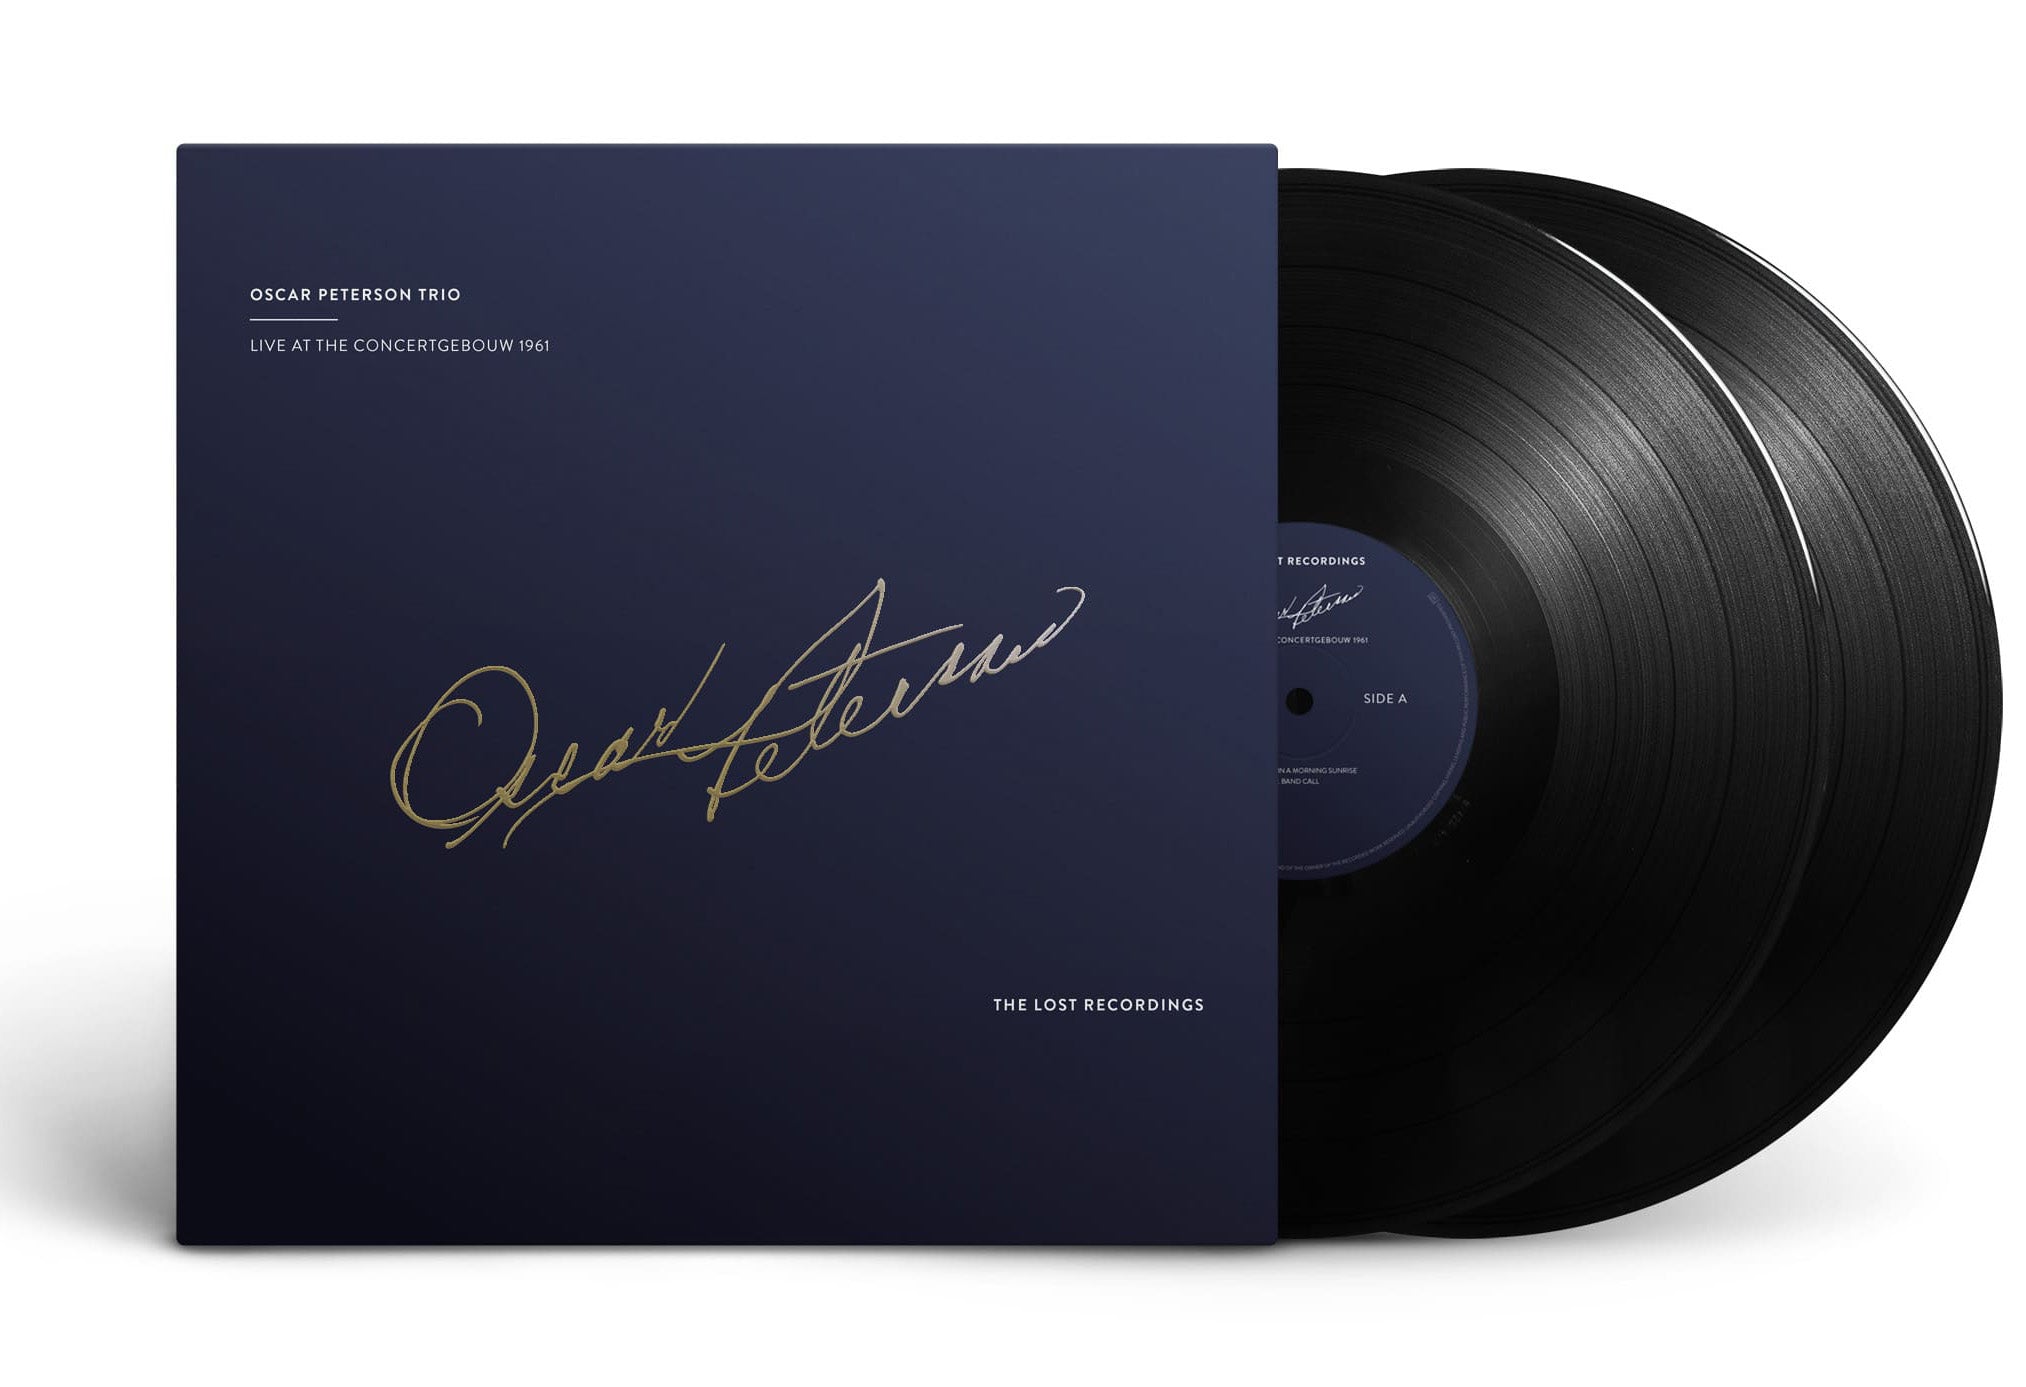 Oscar Peterson - Live at the Concertgebouw 1961 - Double vinyle